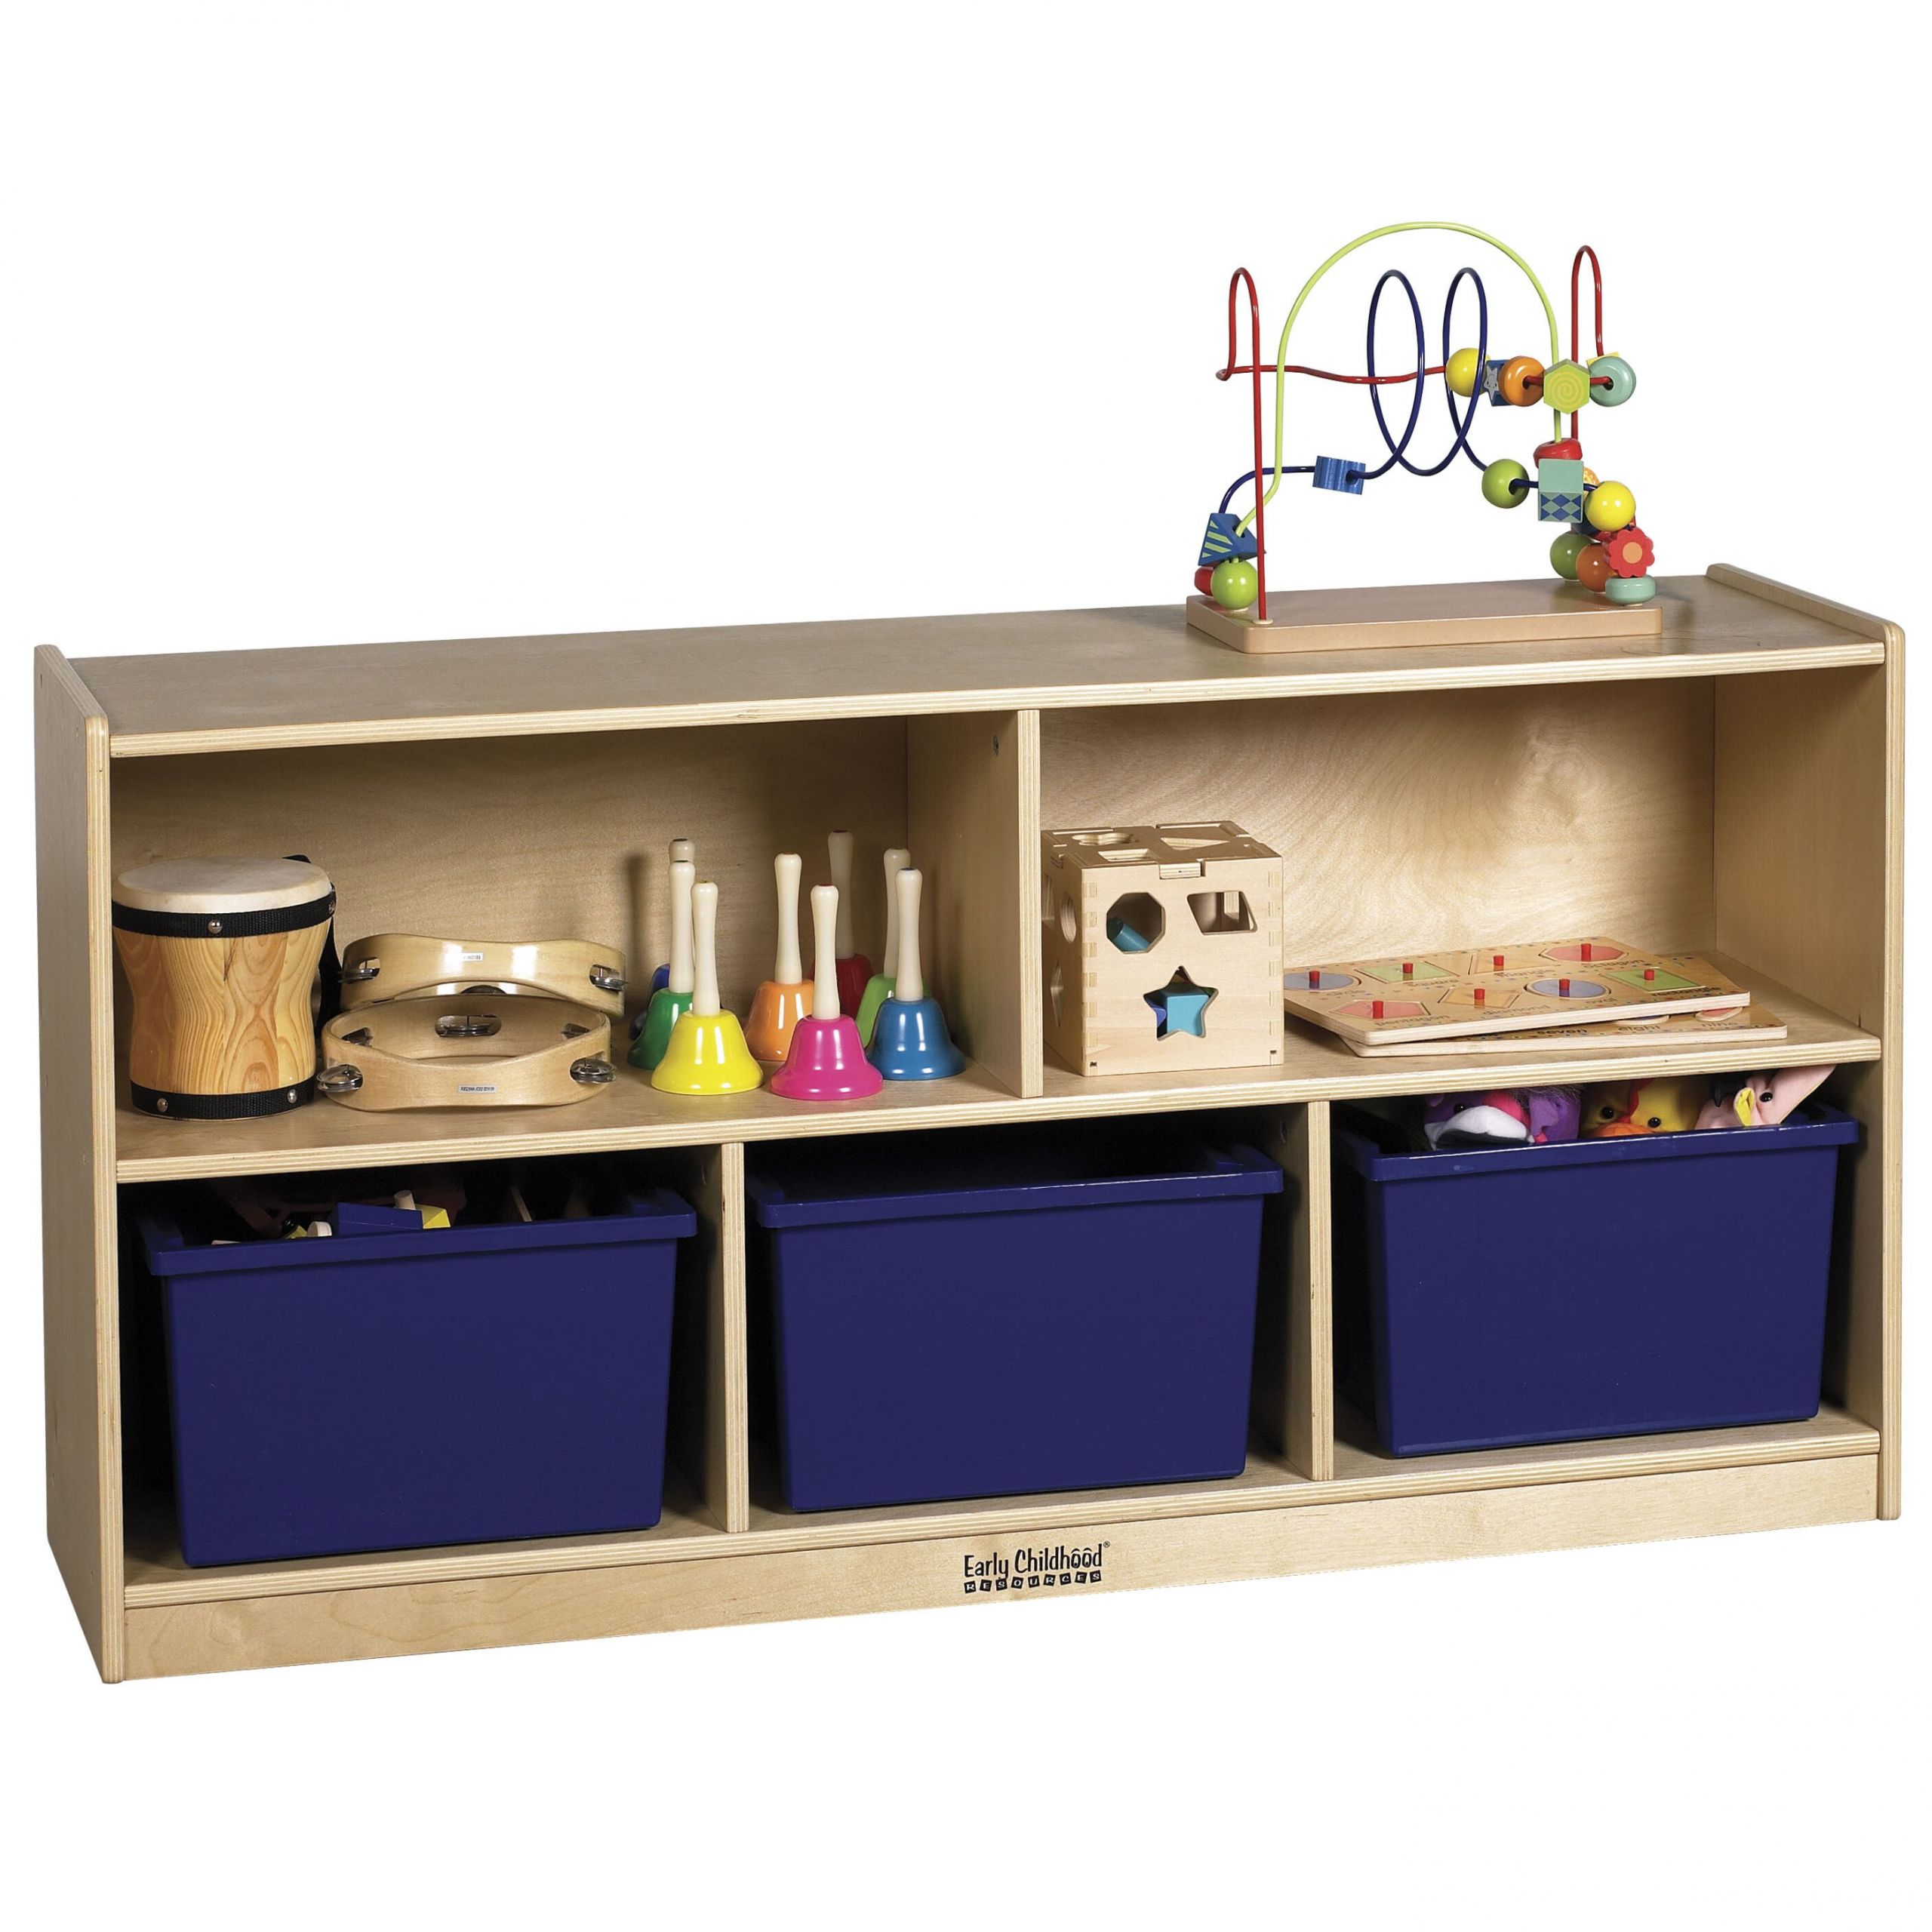 Childrens Storage Cabinet
 ECR4Kids Storage Cabinet & Reviews